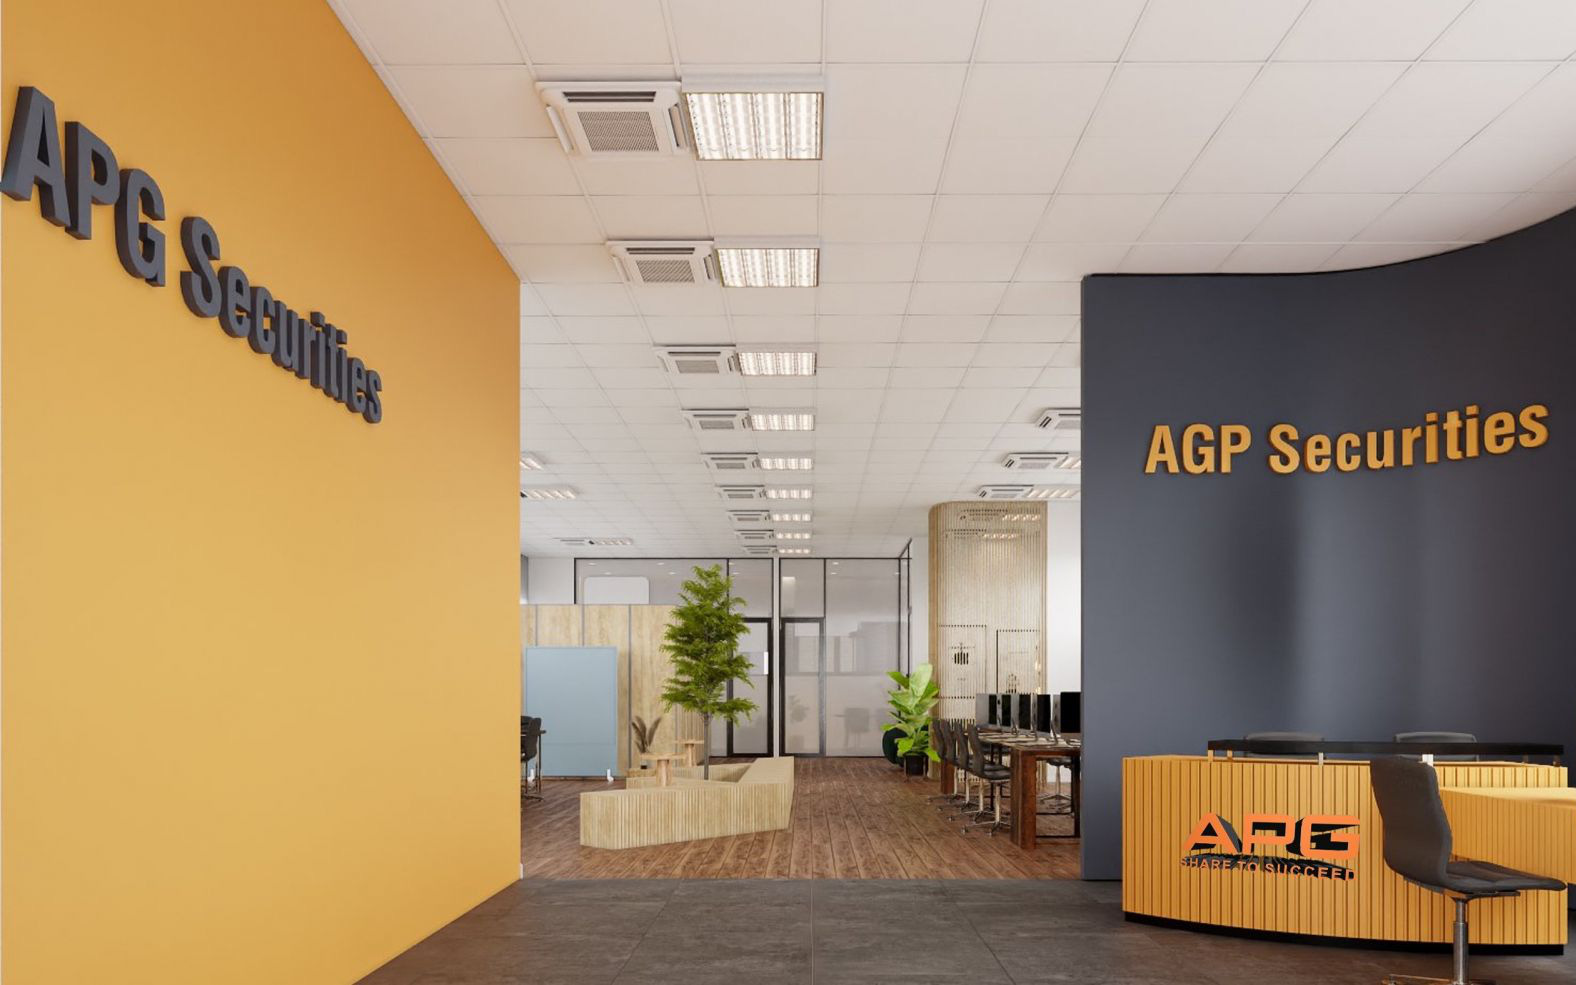 Chứng khoán APG chào bán riêng lẻ 75 triệu cổ phiếu với giá 18.000 đồng/cp